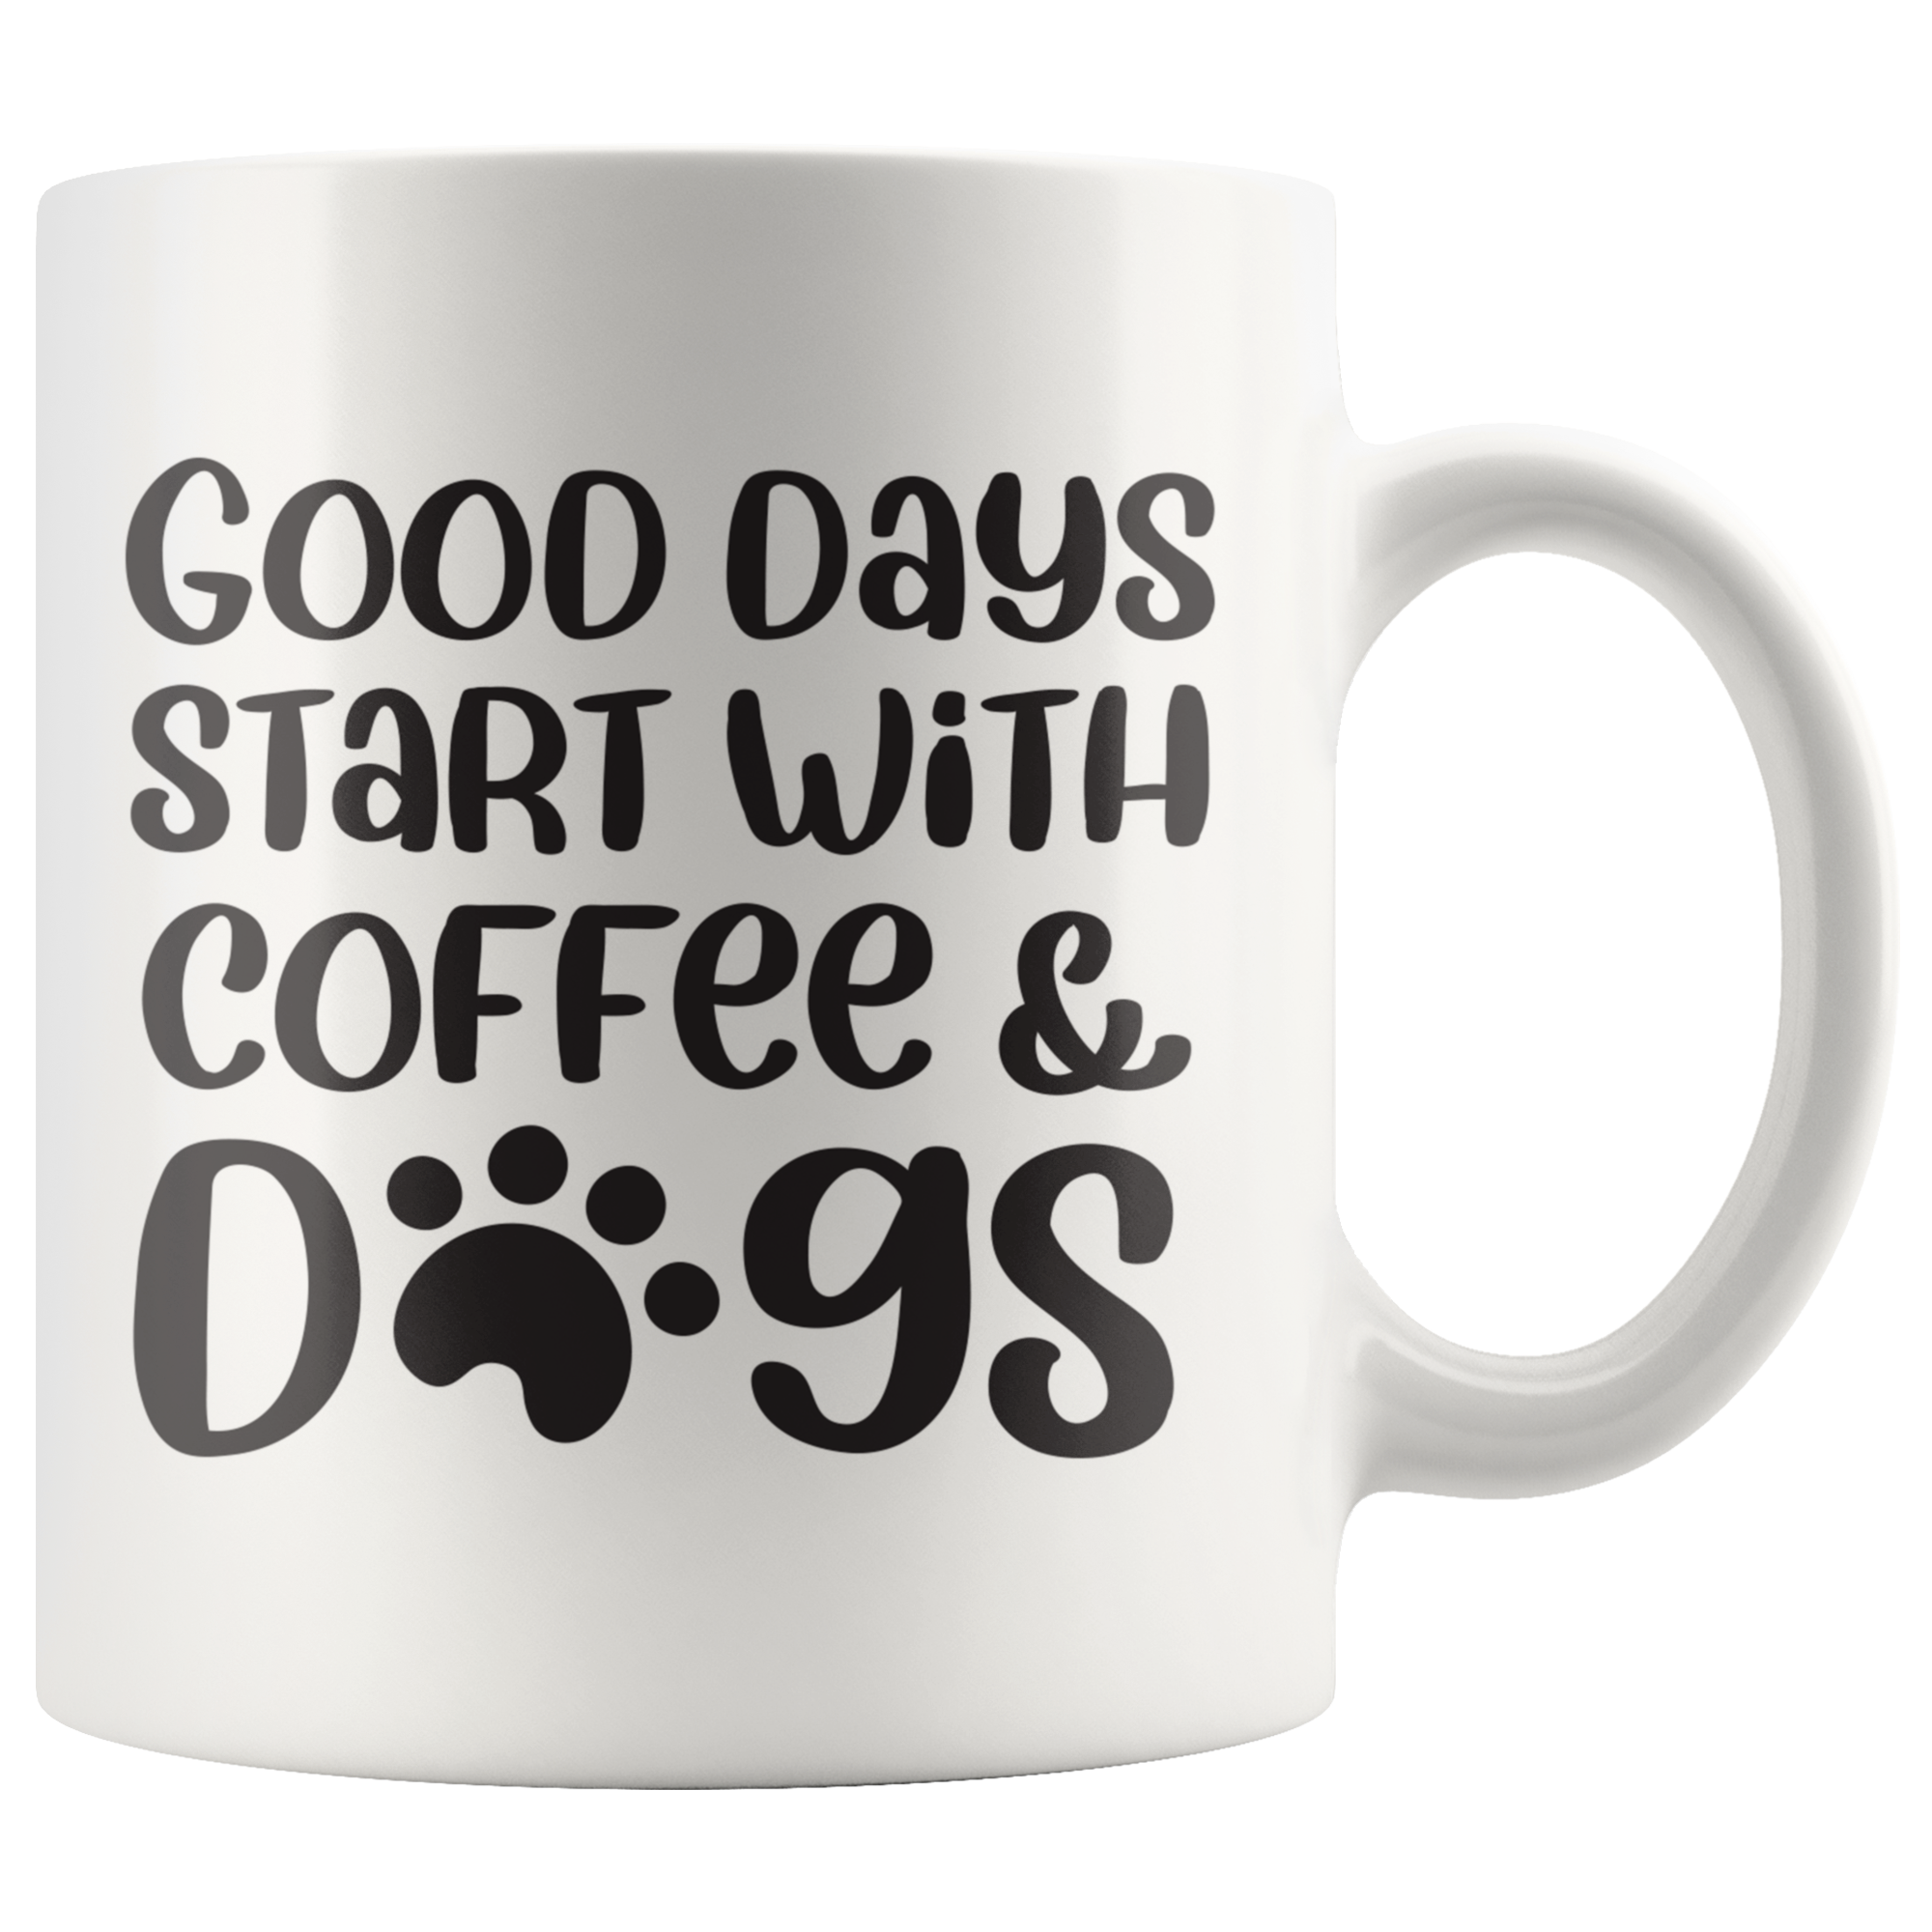 Coffee & Dogs Coffee Mug